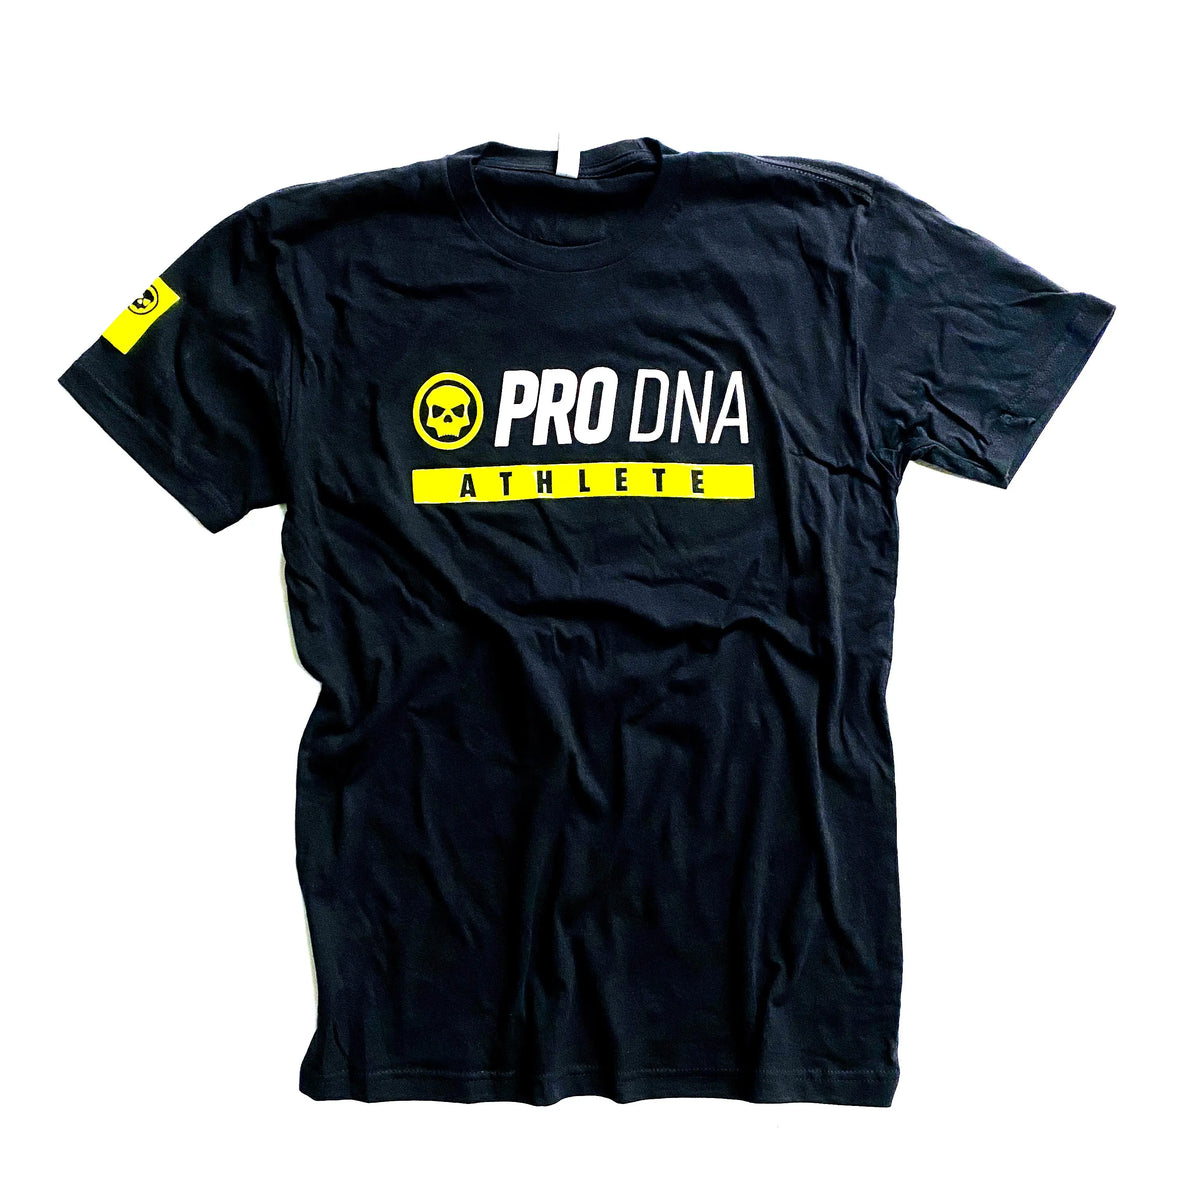 Infamous Pro DNA T-Shirt